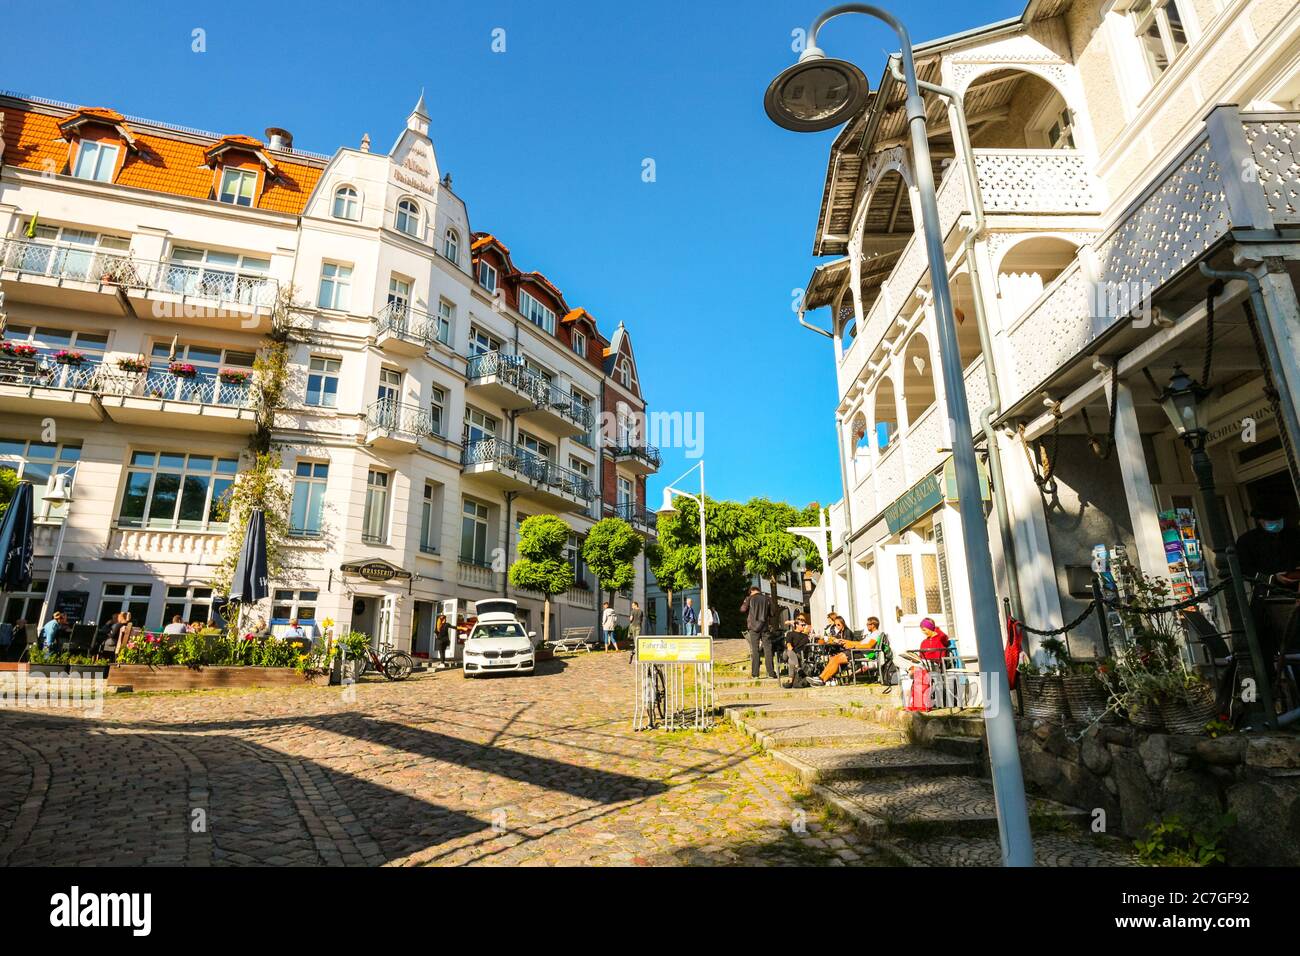 Piccola piazza nel centro storico di Sassnitz, sull'isola di Rügen, in Germania; caffetterie e ristoranti costeggiano la strada acciottolata con l'architettura tipica. Foto Stock